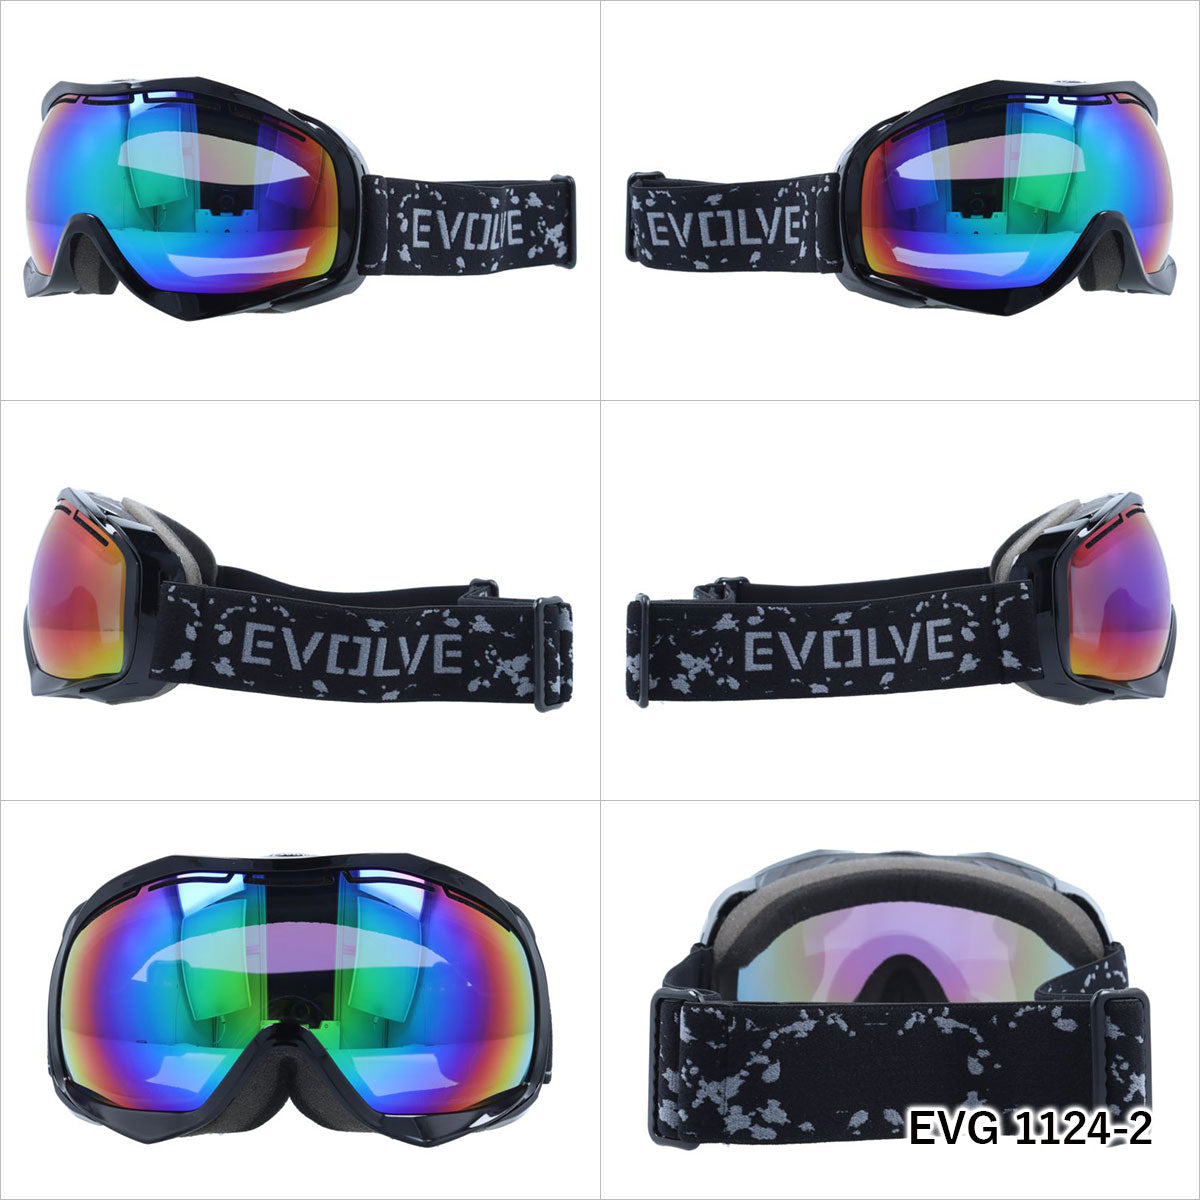 イヴァルヴ ゴーグル ミラーレンズ アジアンフィット EVOLVE EVG 1124 メンズ レディース スキー スノーボード ウィンタースポーツ 曇り防止 球面レンズ ダブルレンズ 眼鏡対応 ヘルメット対応